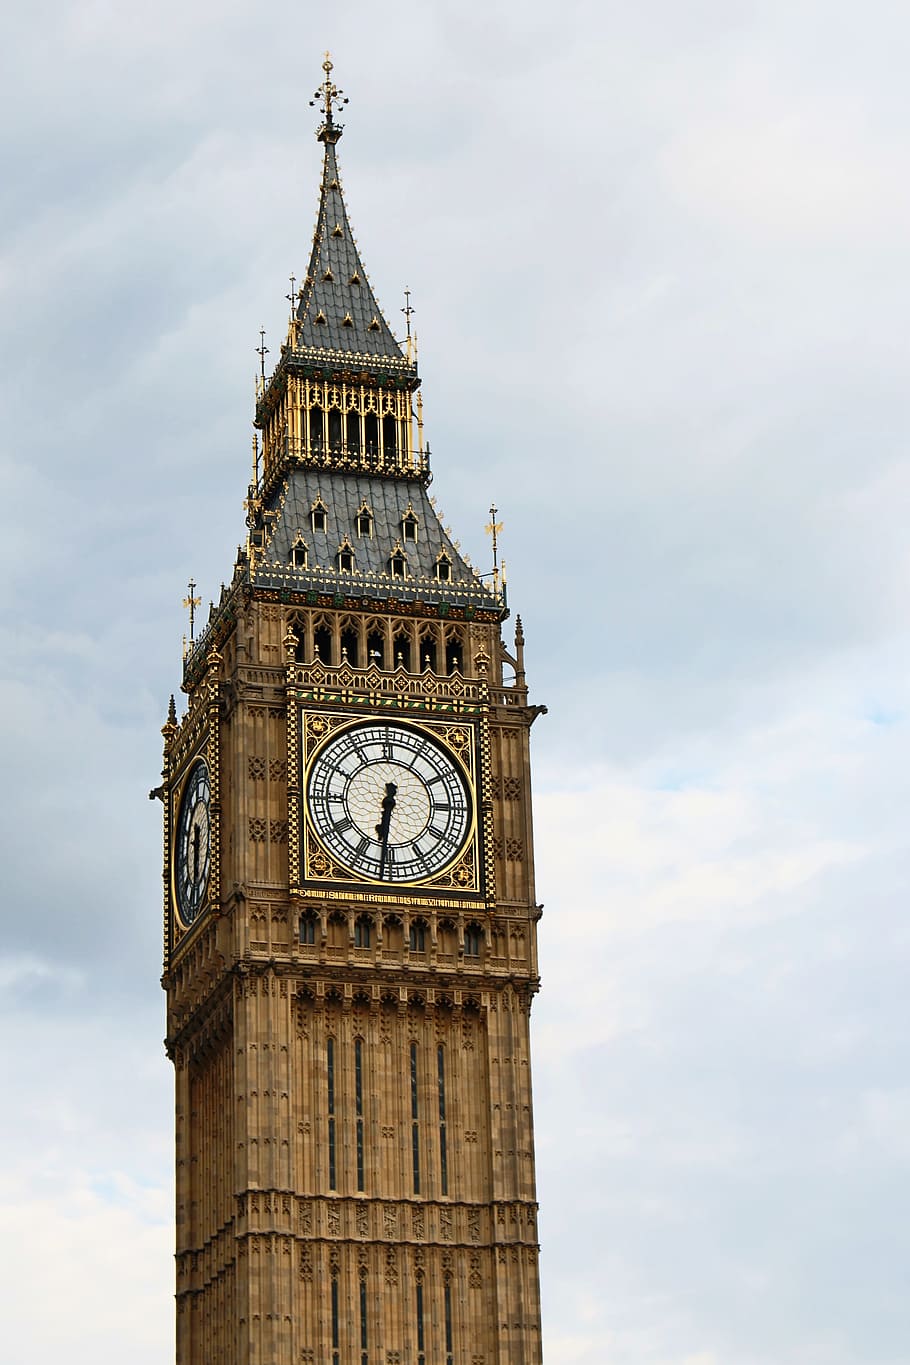 ビッグベン ロンドン 時計 イングランド タワー イギリス ランドマーク 時計塔 建築 雲 空 Pxfuel